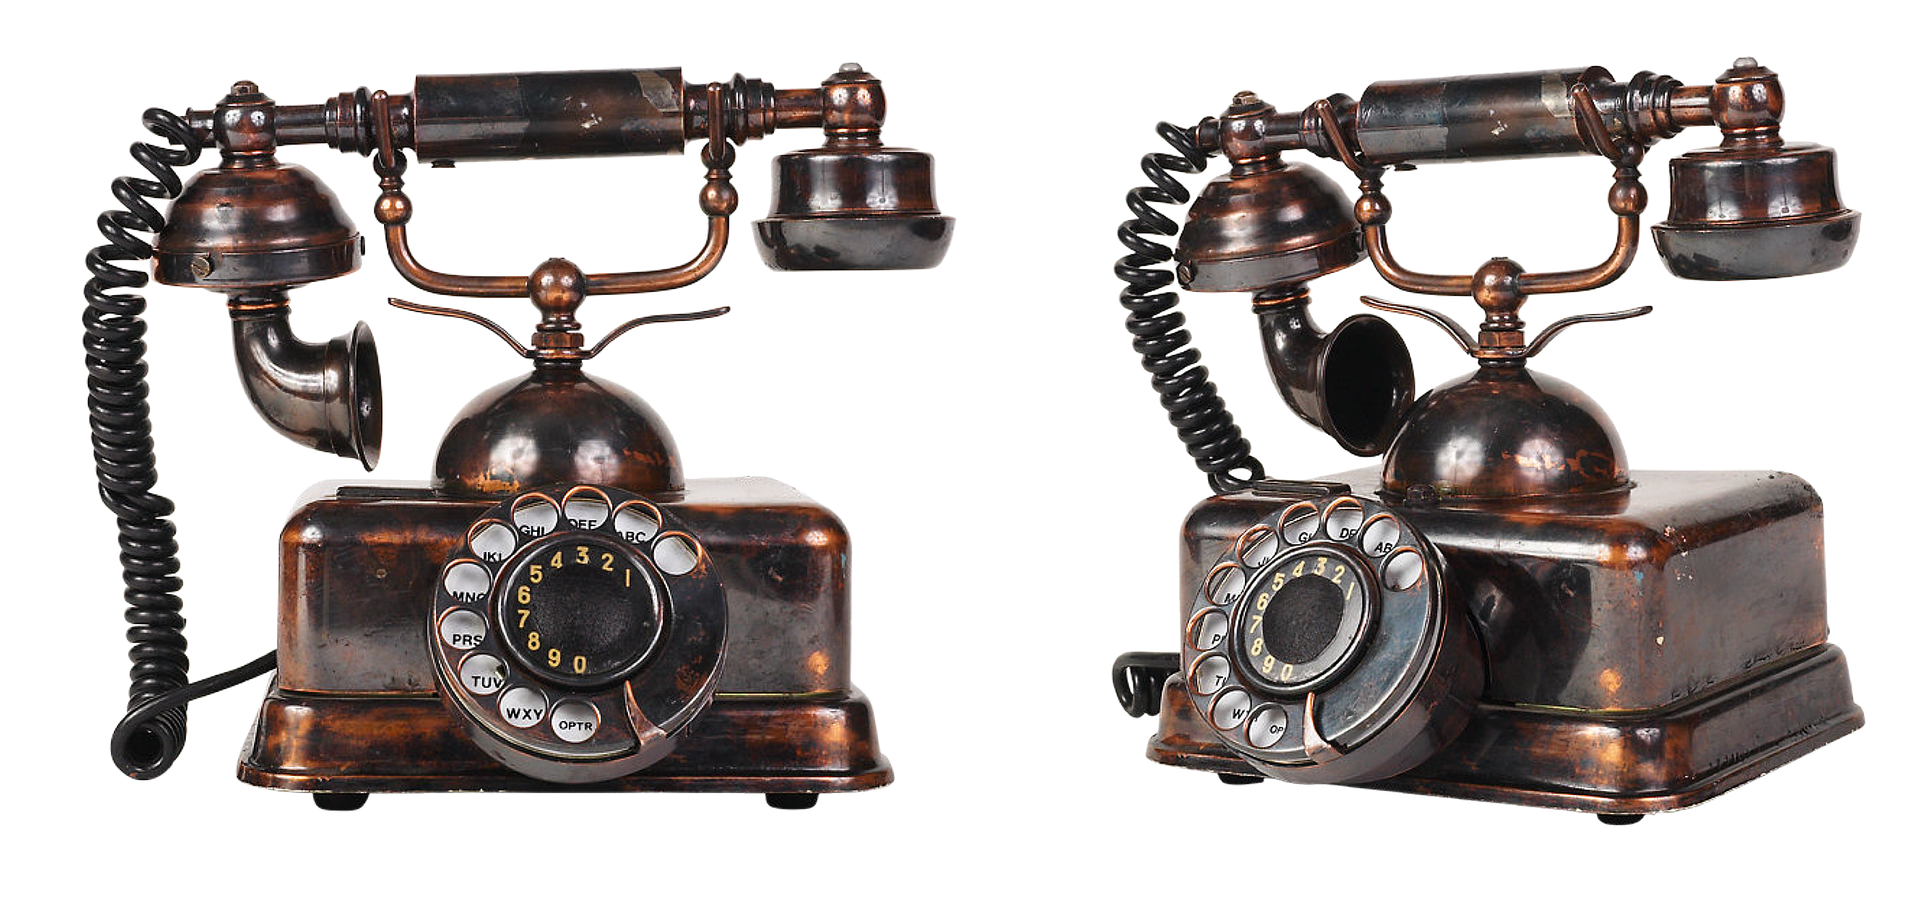 Спб старый телефонов. Старый телефон. Старинный телефон. Старинный телефонный аппарат. Телефонный аппарат ретро.